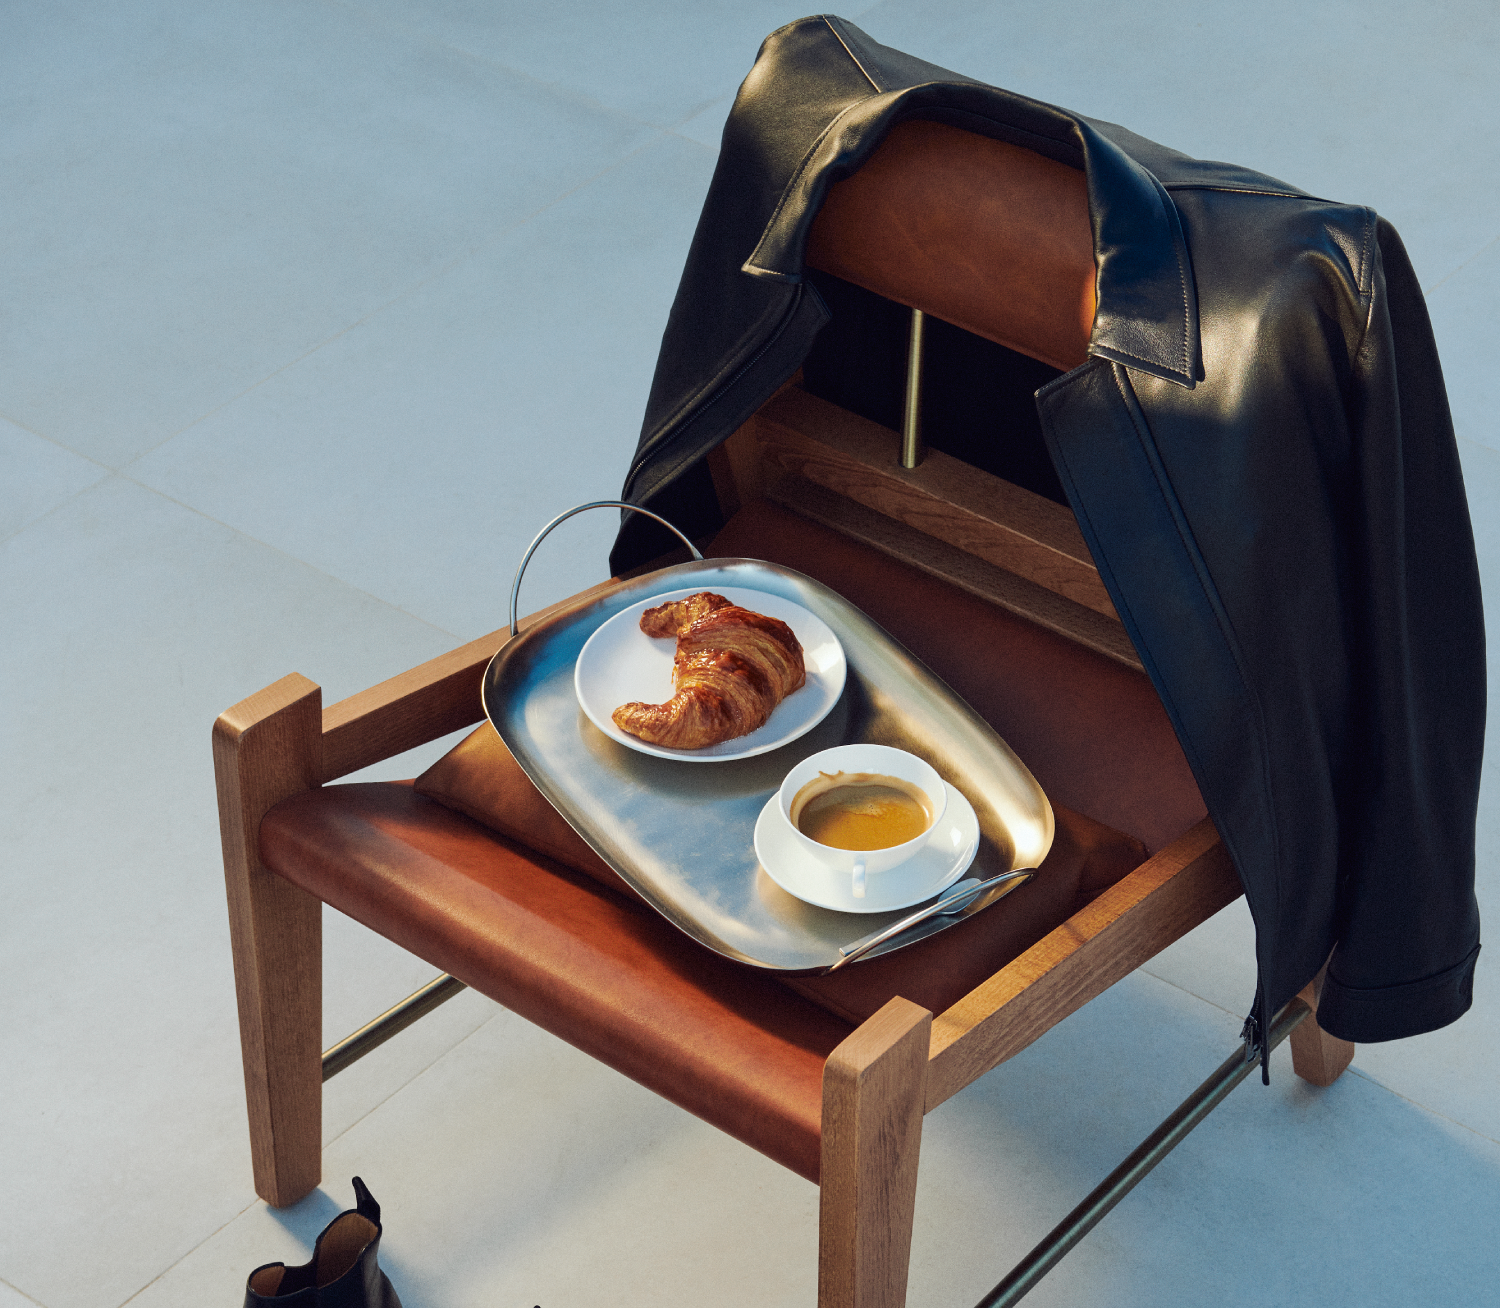 아침 식사 음식과 음료가 담긴 쟁반이 있는 의자 